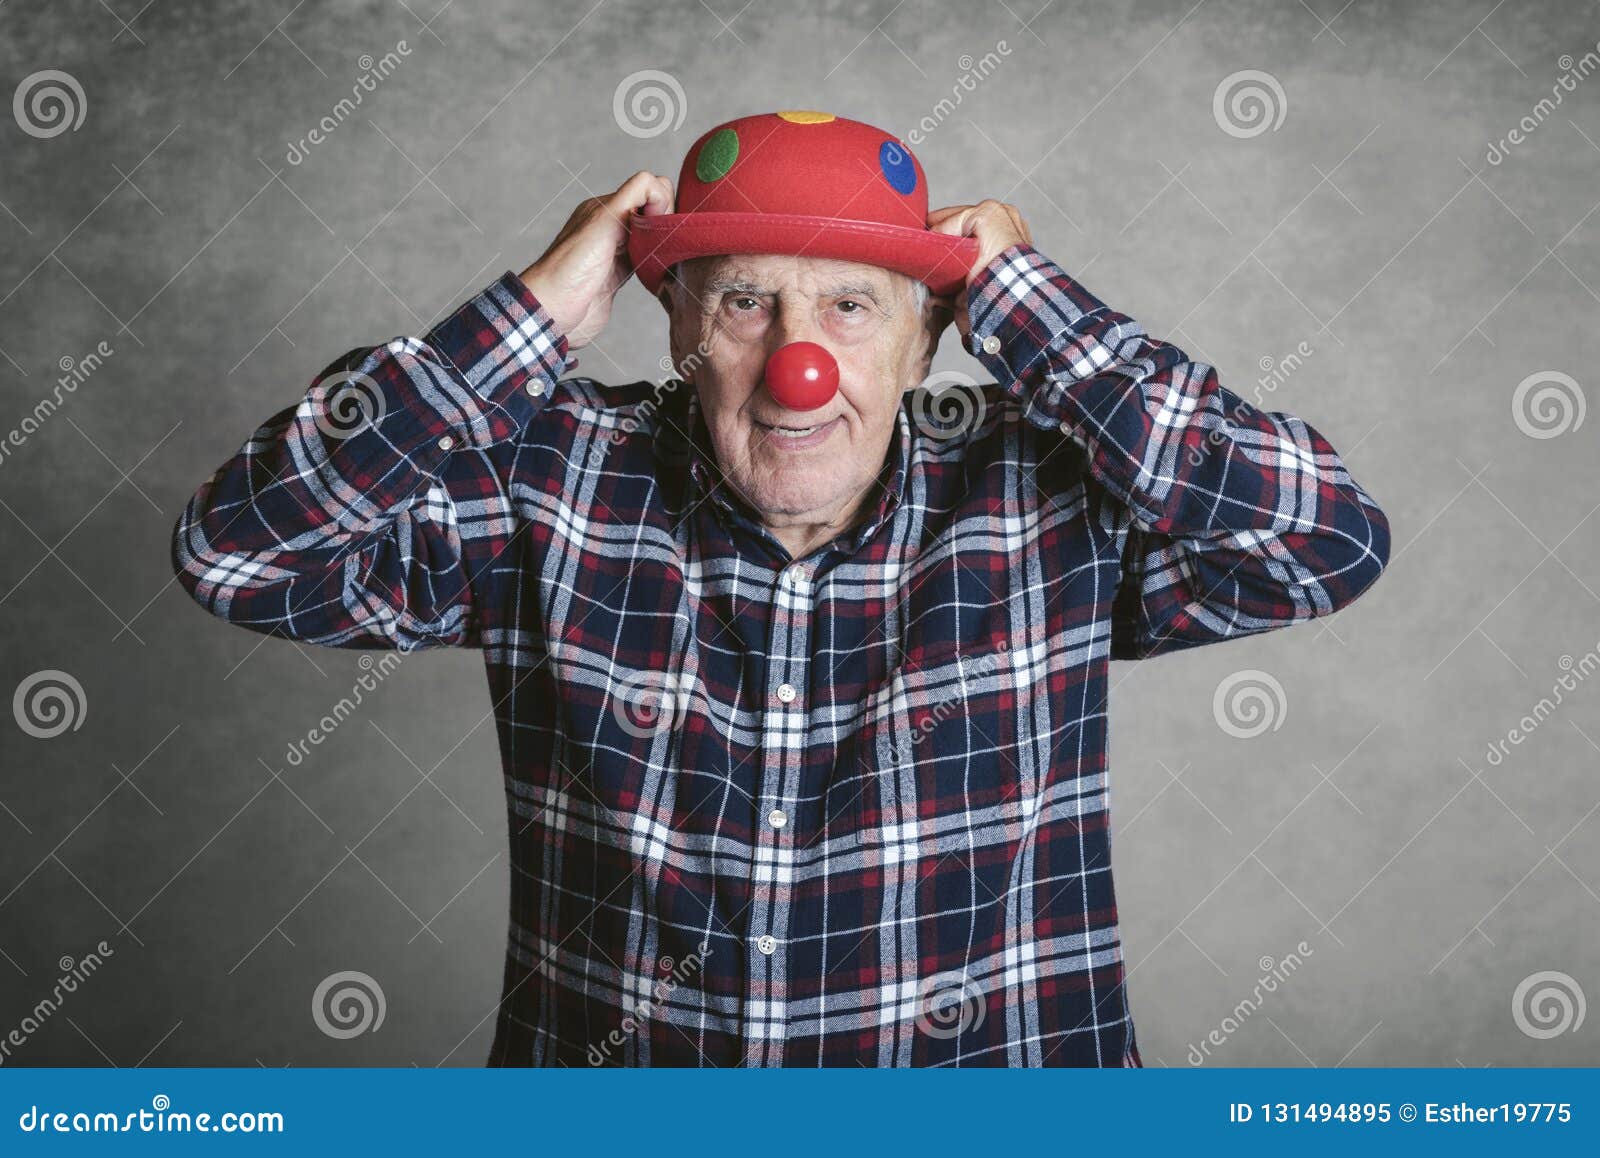 Дедушка клоун. Смешной дед. УГАРНЫЙ дед в очках и шляпе. Смешной дед удивленный. Дед с фотостоков.